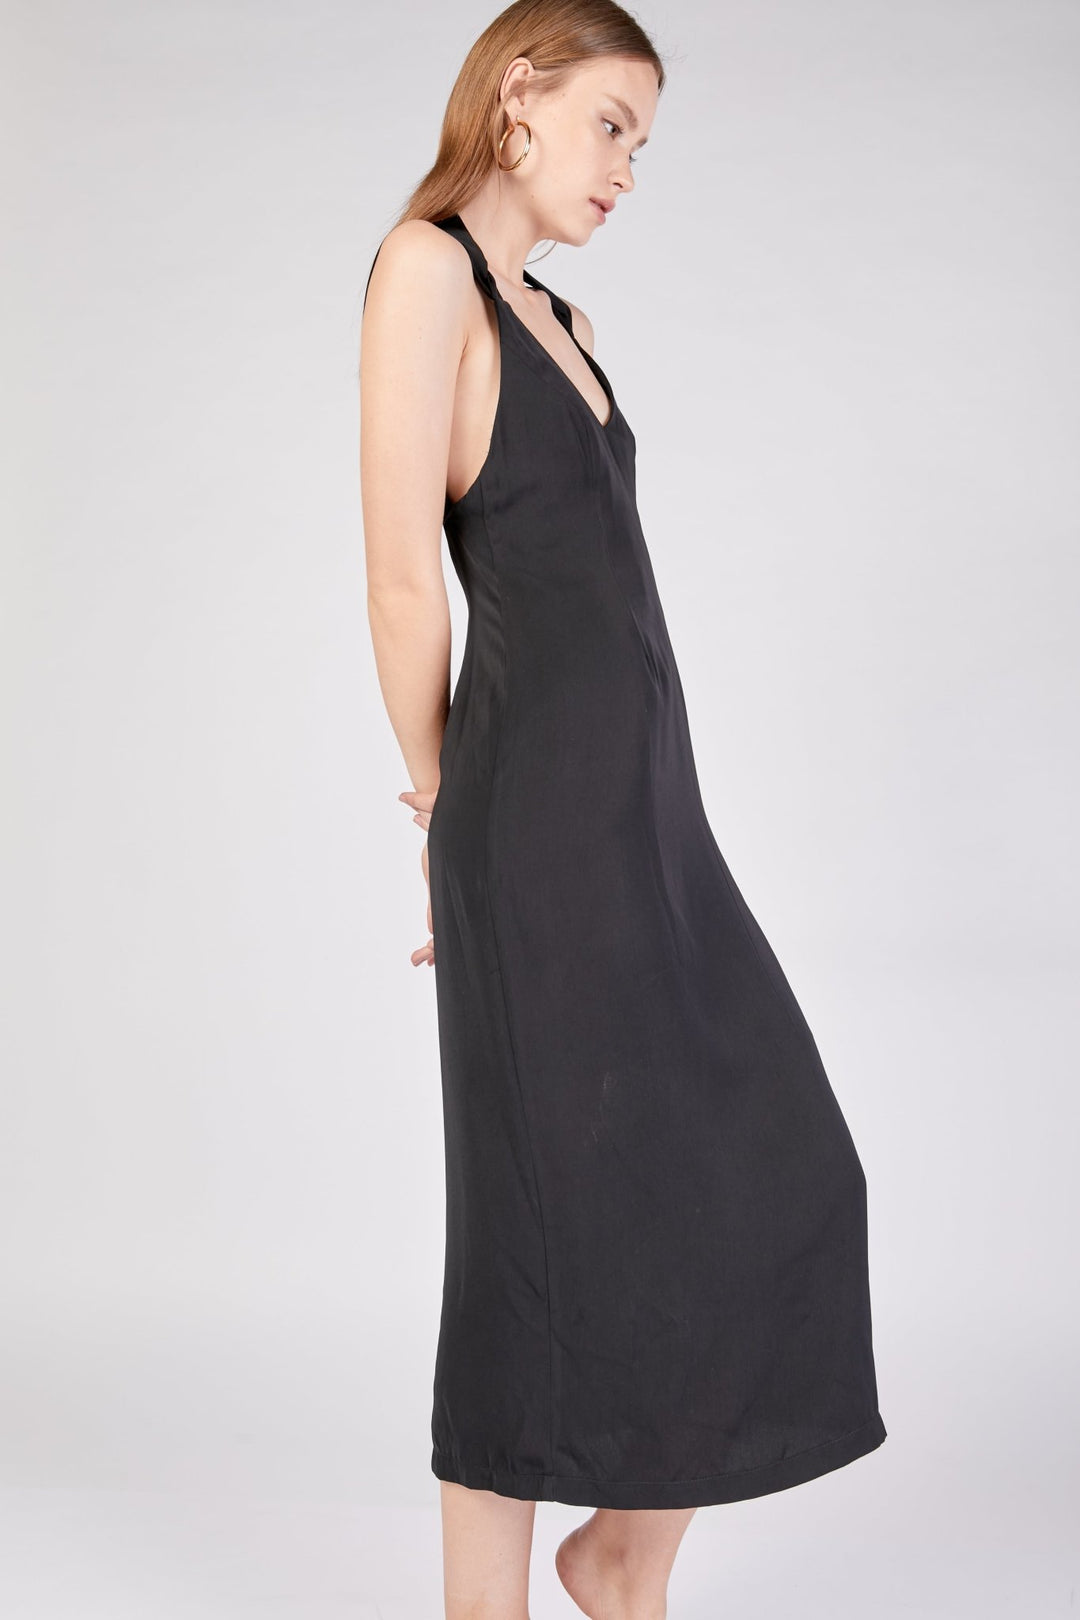 שמלת קלאסיק מידי בצבע שחור - Moi Collection